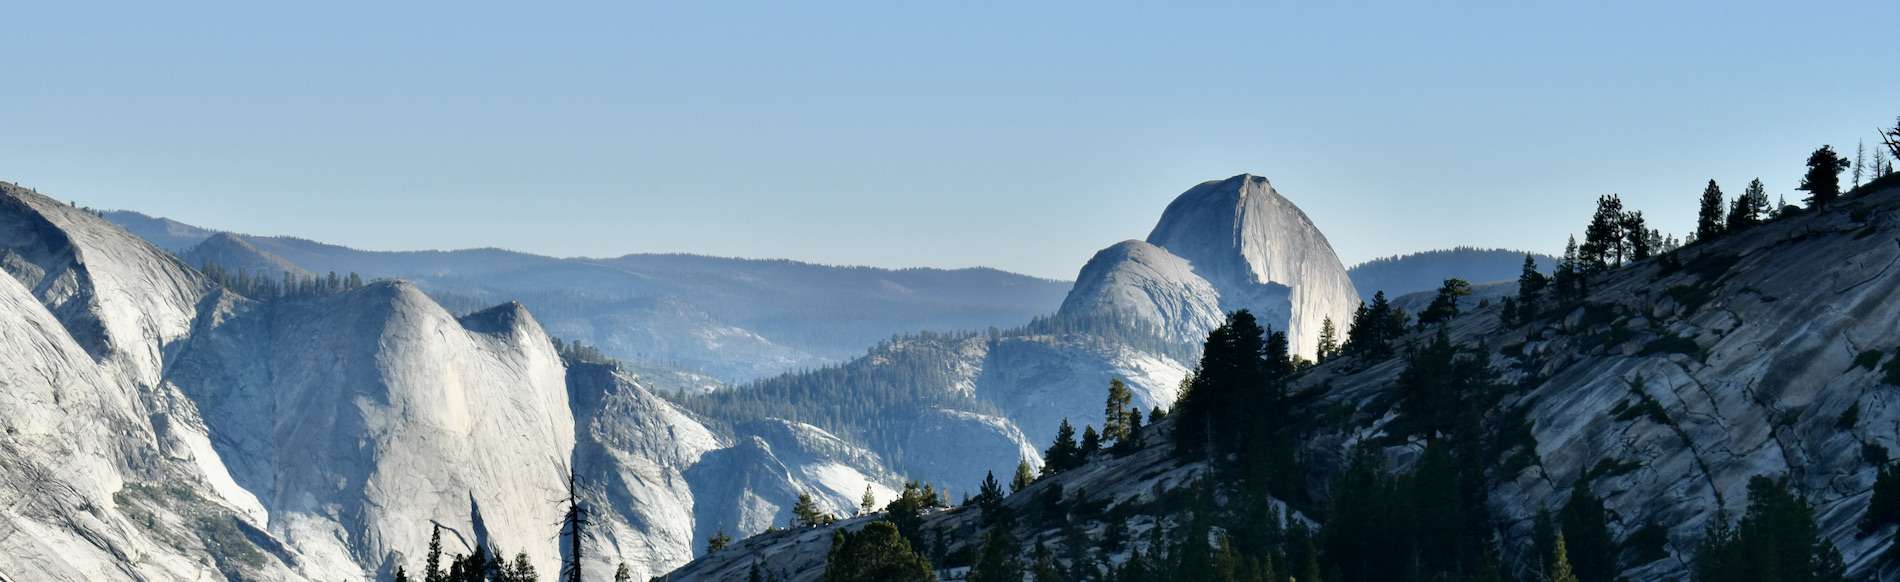 Tiago Road Yosemite Valley alpine basin